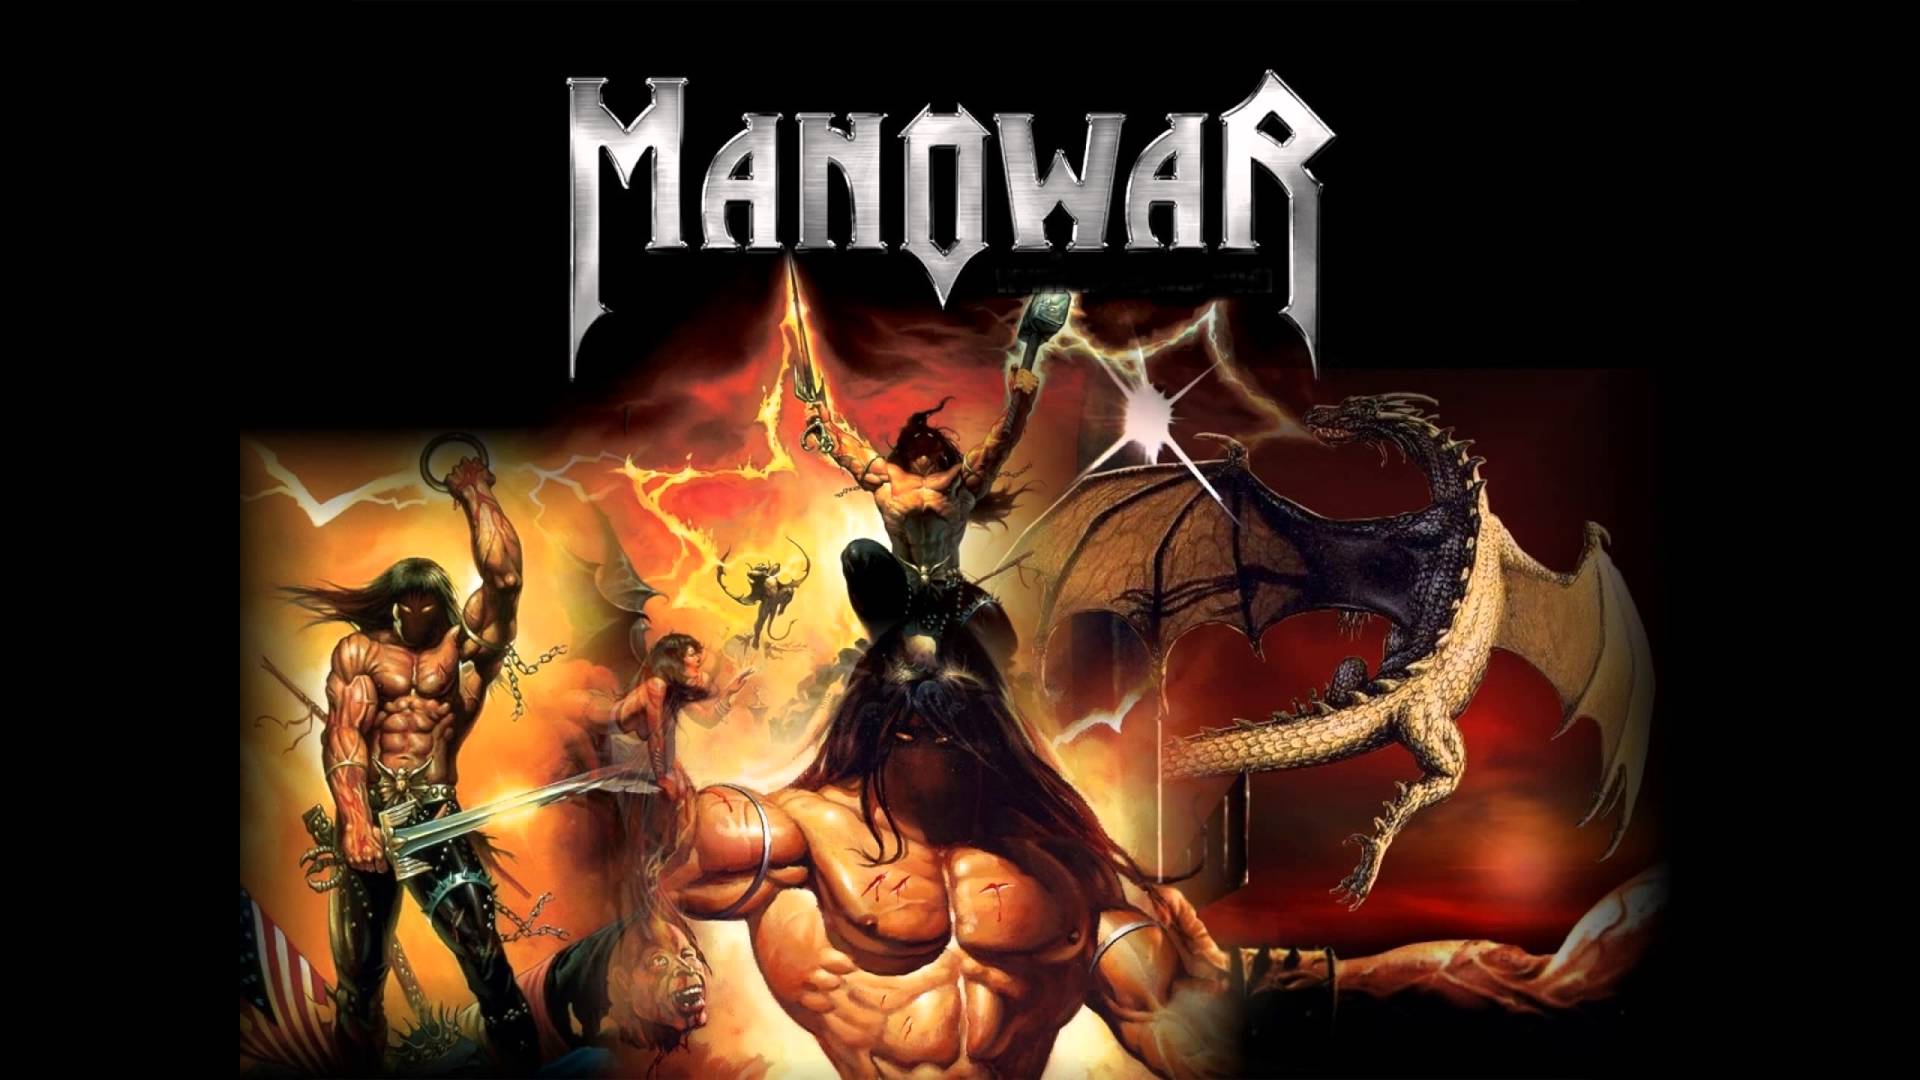 Manowar fight. Группа Manowar иллюстрации. Мановар постеры. Manowar 2002. Мановар обложки.